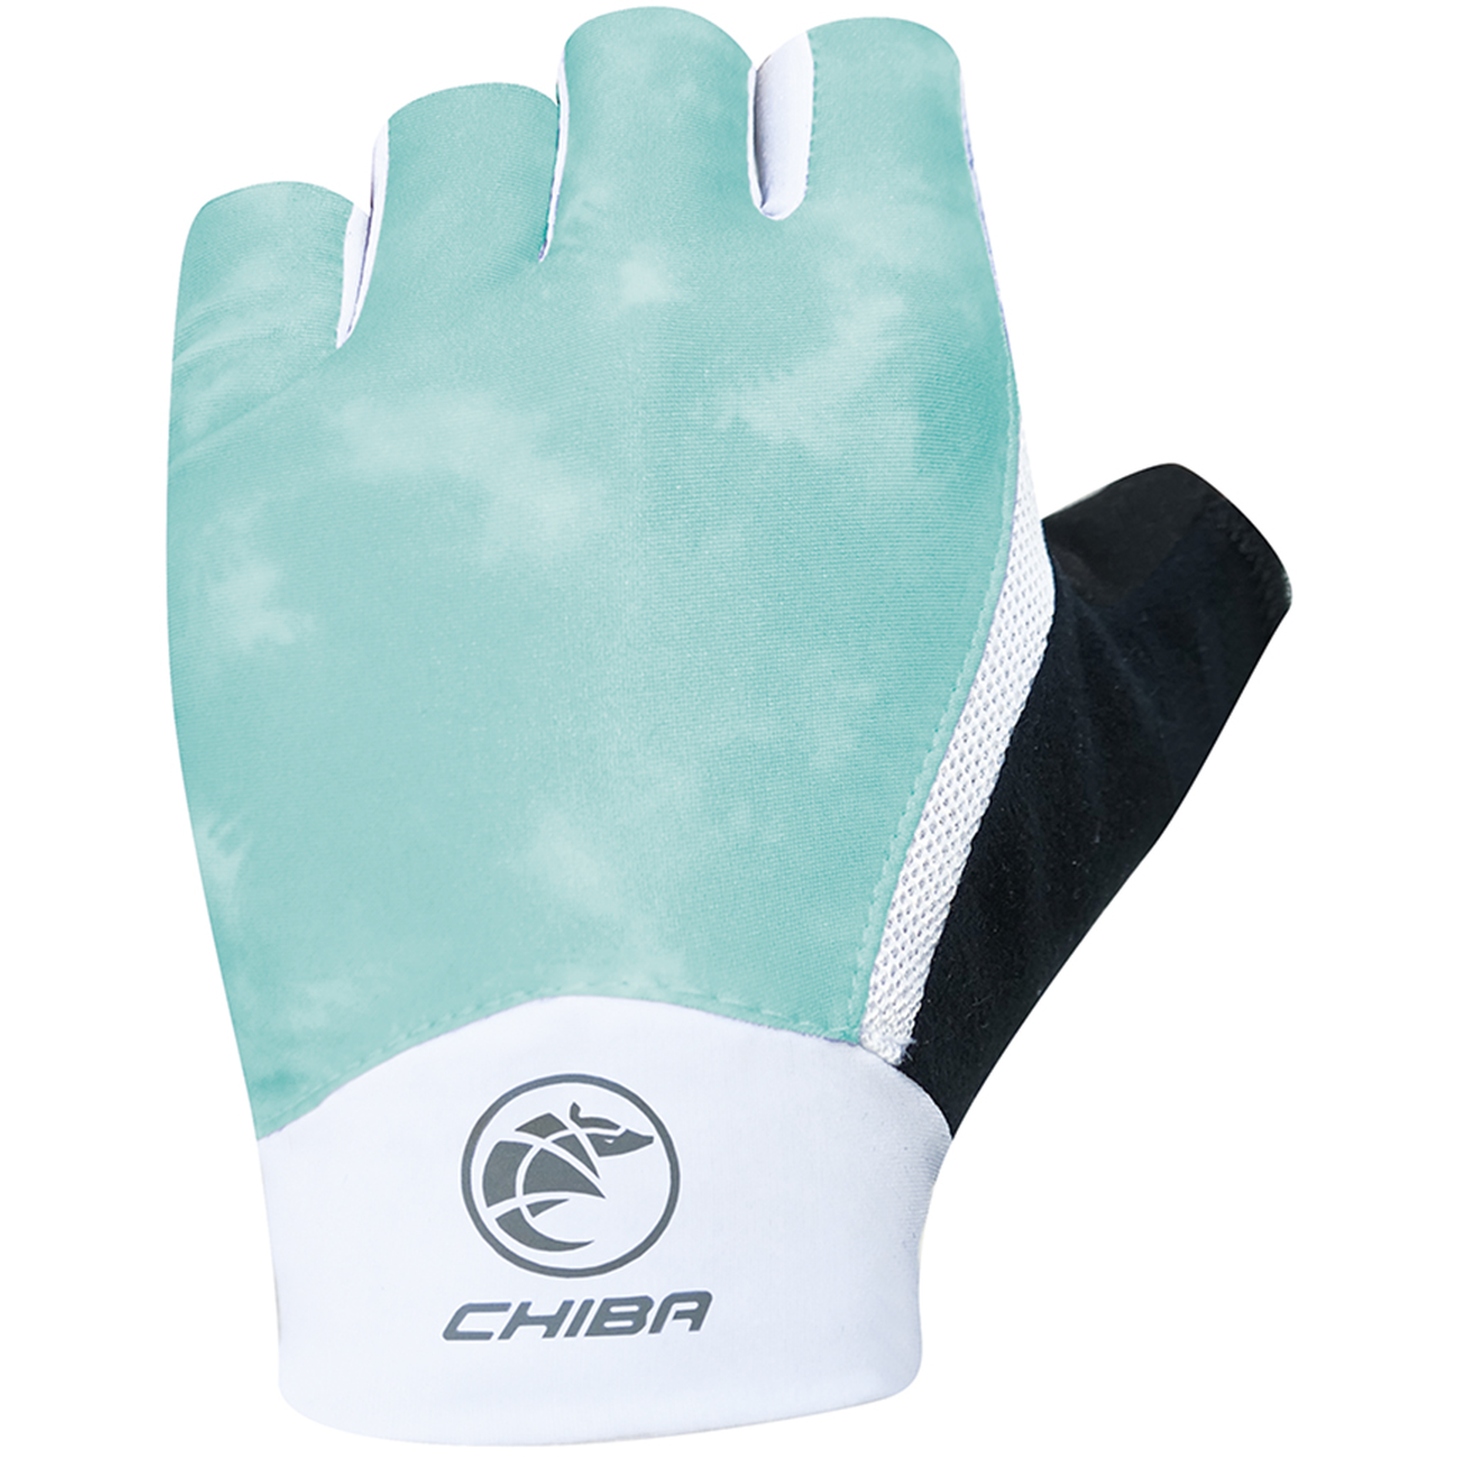 Produktbild von Chiba Tie Dye Kurzfinger-Handschuhe Damen - petrol